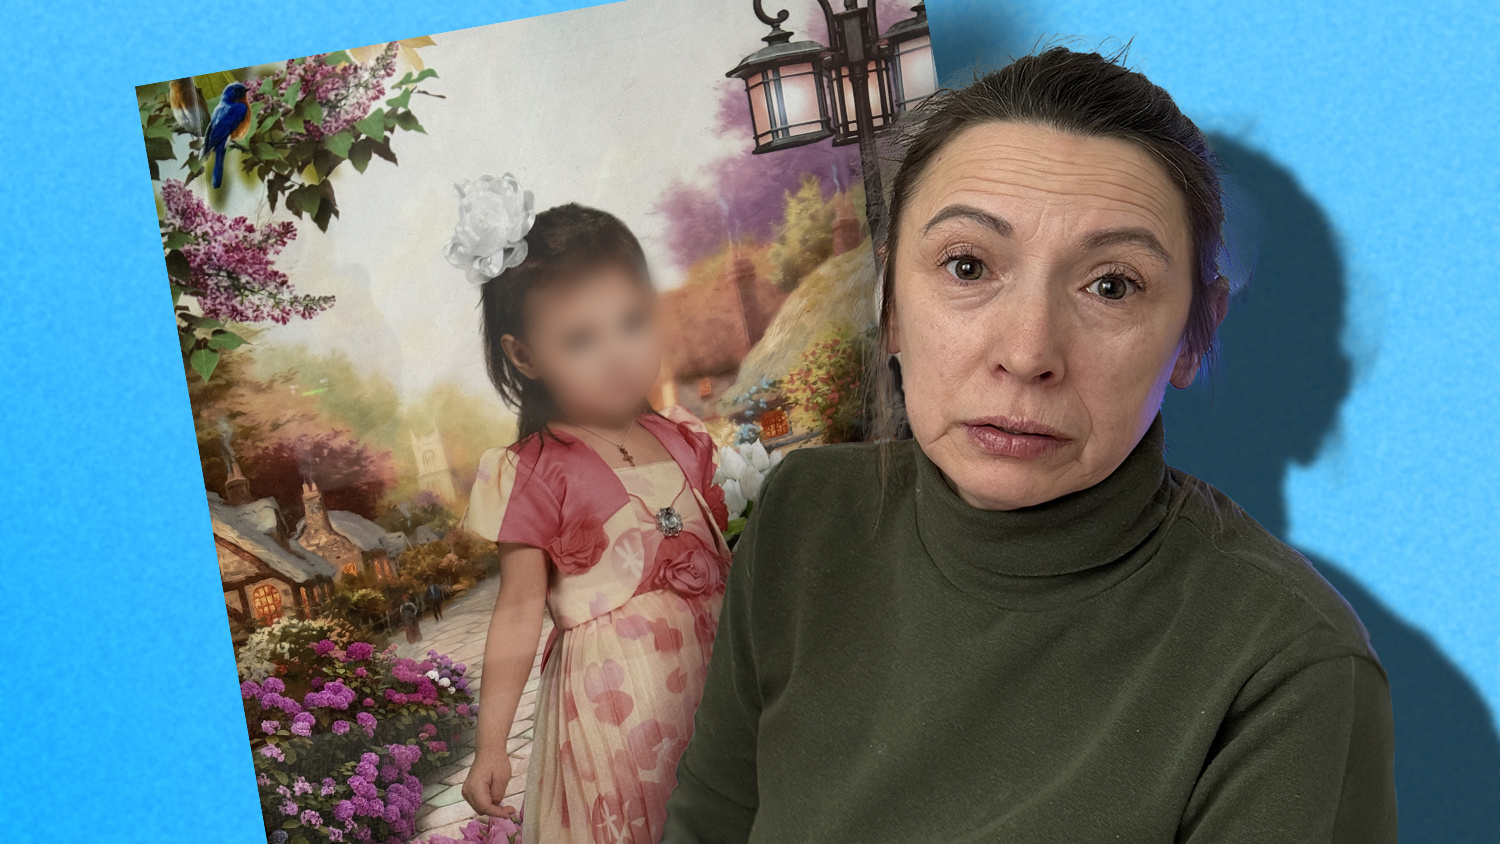 «Ребенок в шоке, в ужасе»: история бабушки из Екатеринбурга, которая пошла на преступление, воюя за внучку